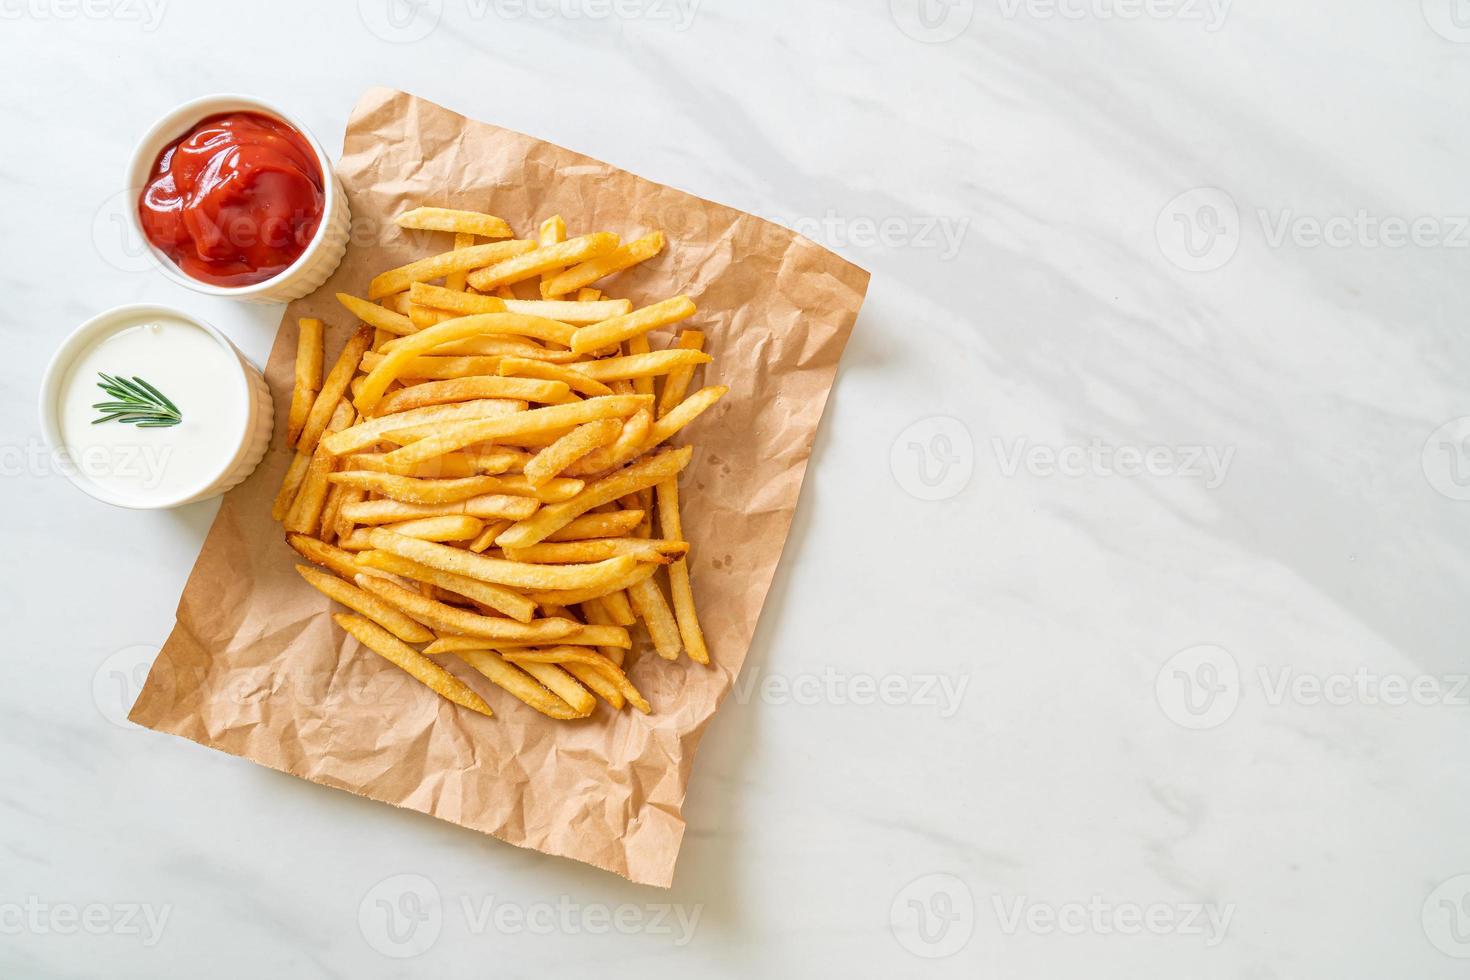 batatas fritas com creme de leite e ketchup foto